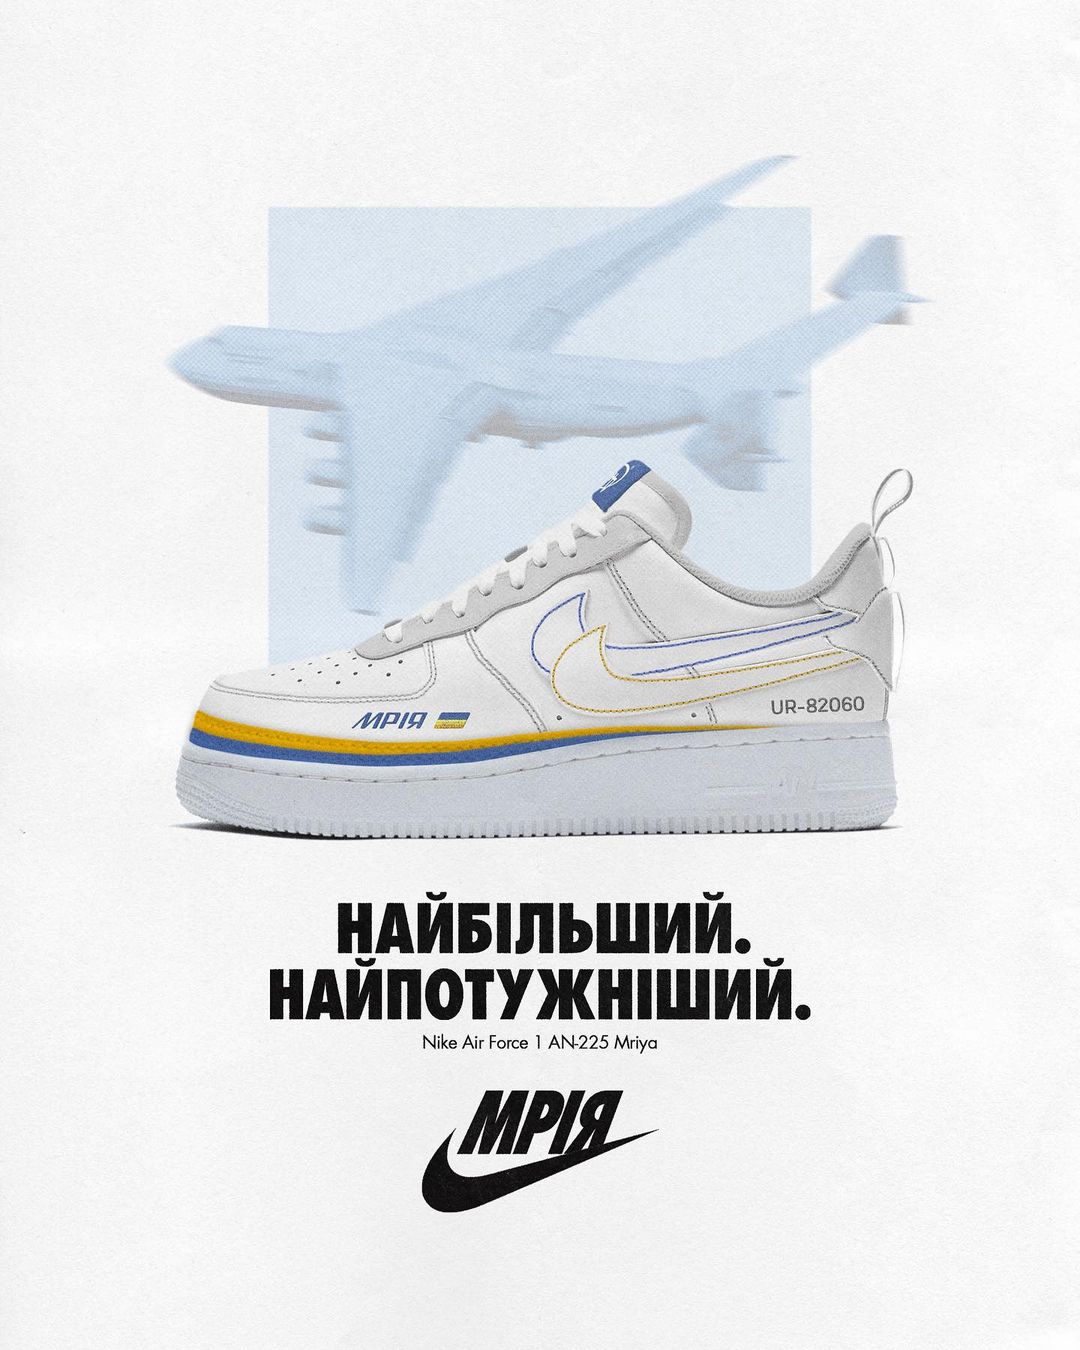 Украинский дизайнер придумал кроссовки Nike с самолетом "Мрія"